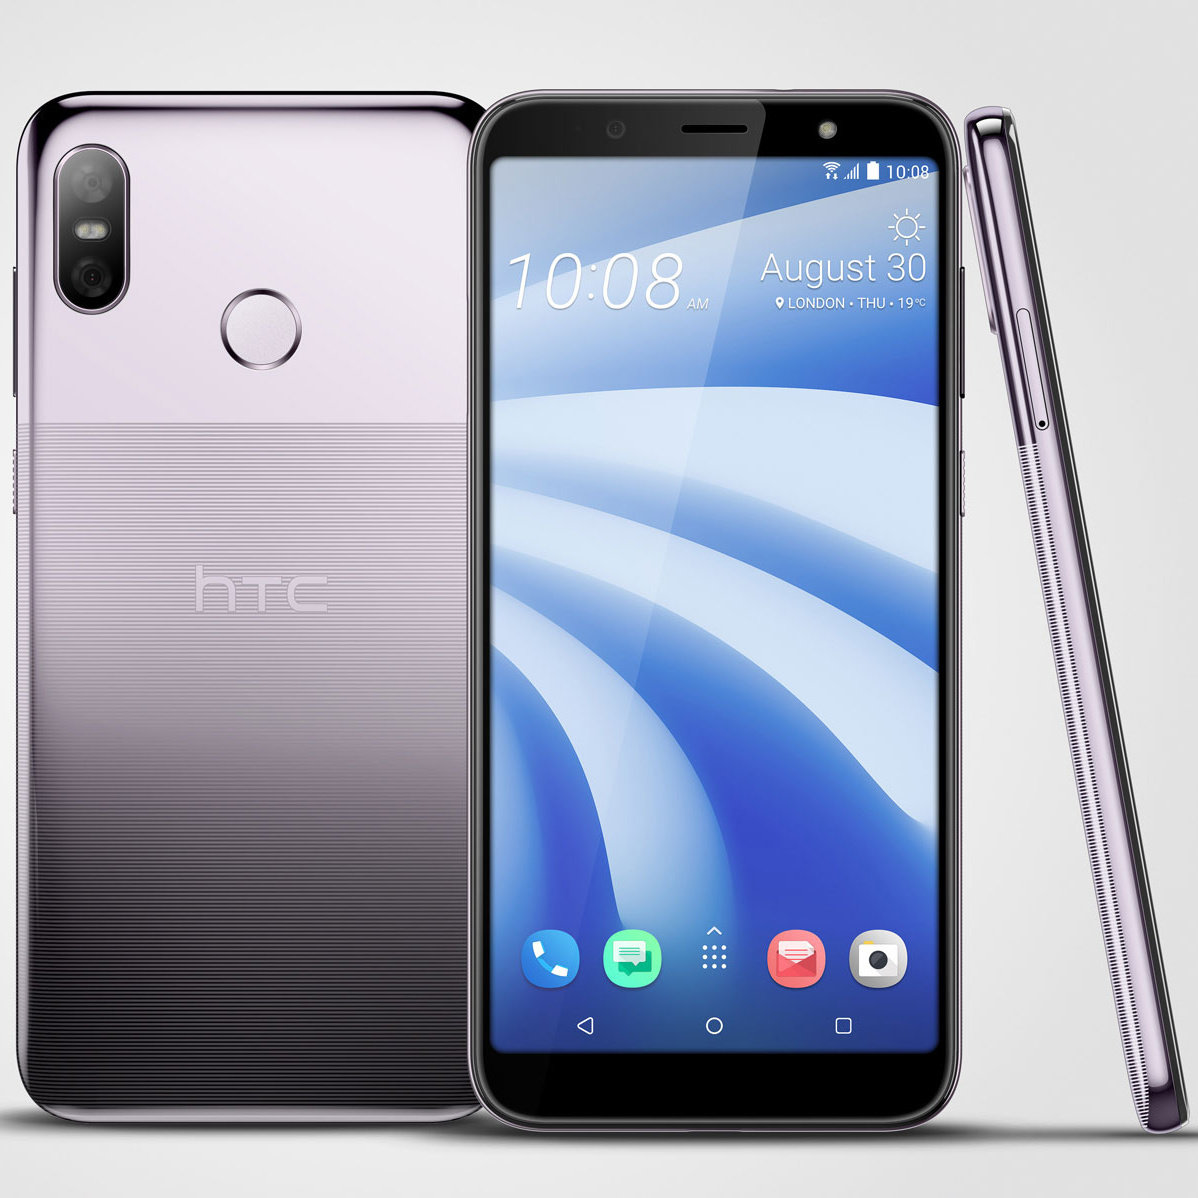 IFA 2018: HTC má mobil pro masy, láká na duální kameru a drážkovaný design